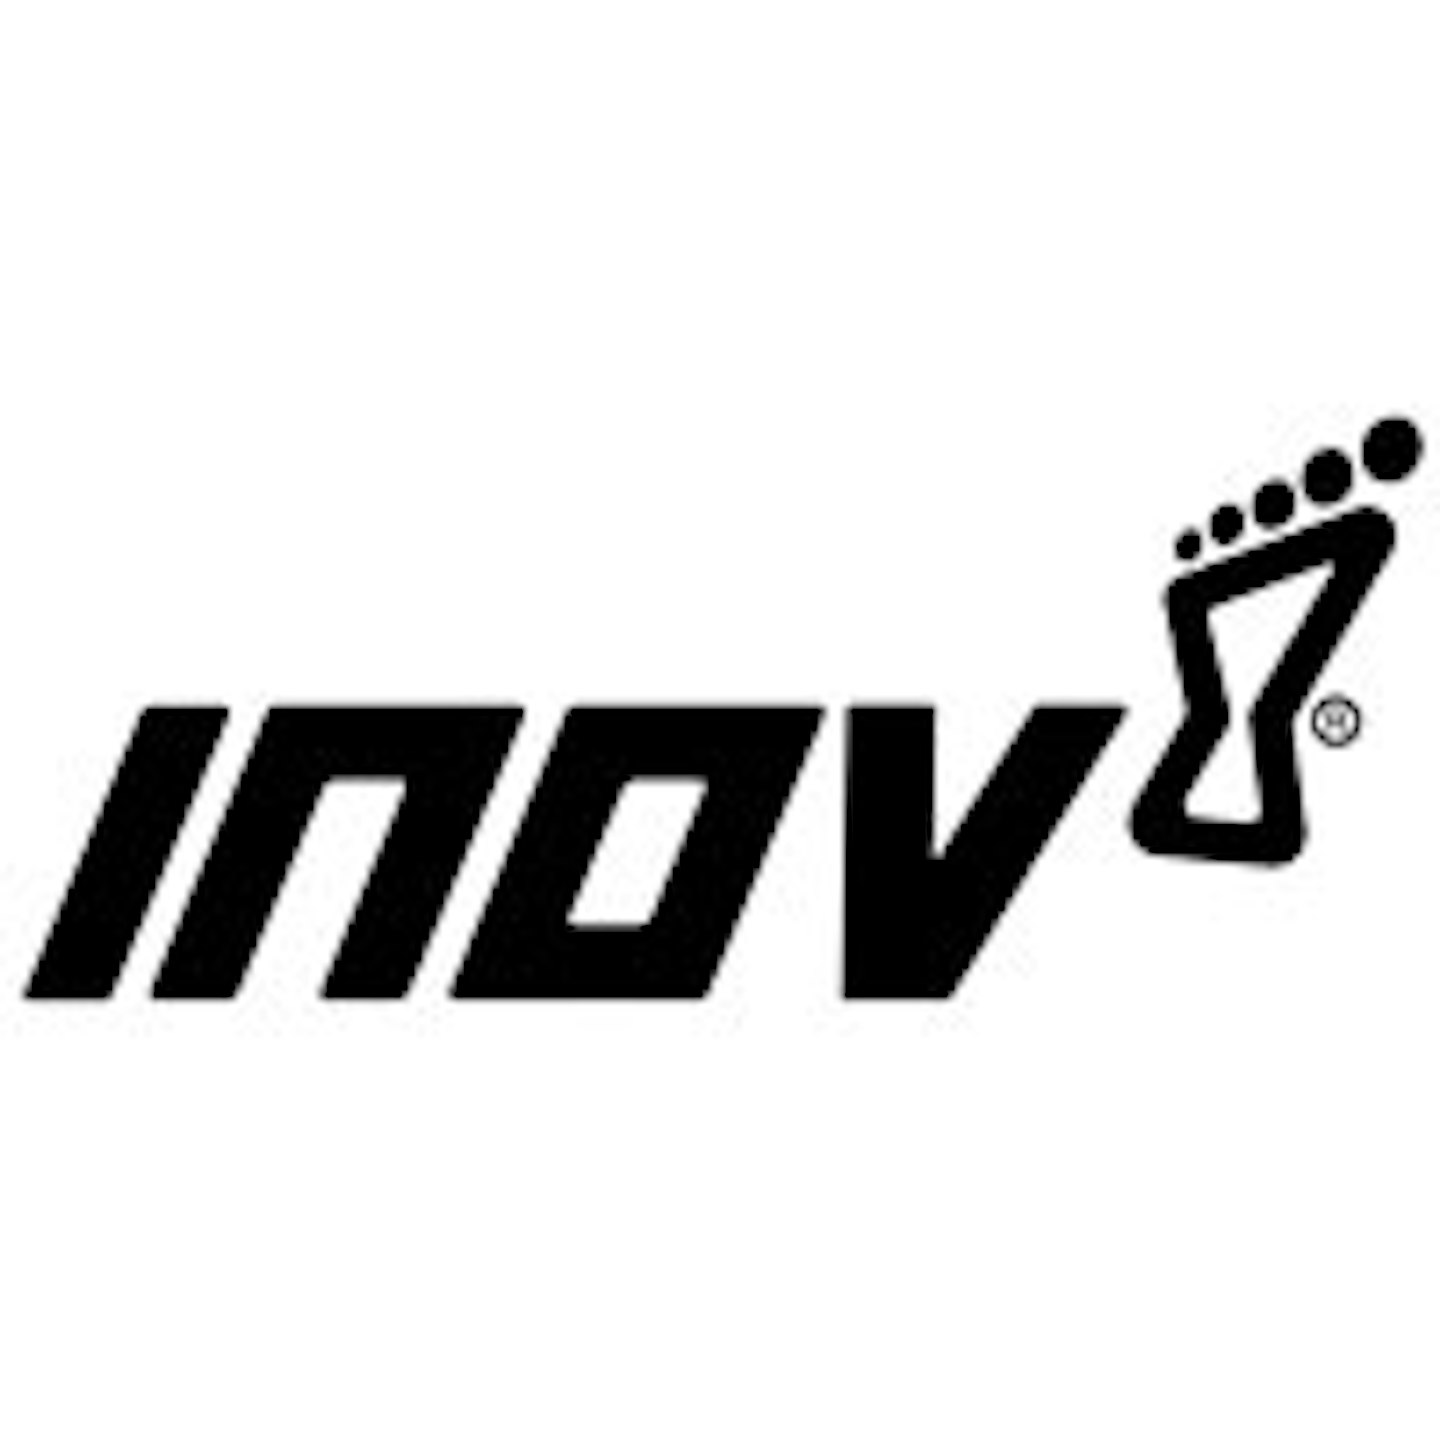 Inov-8 logo